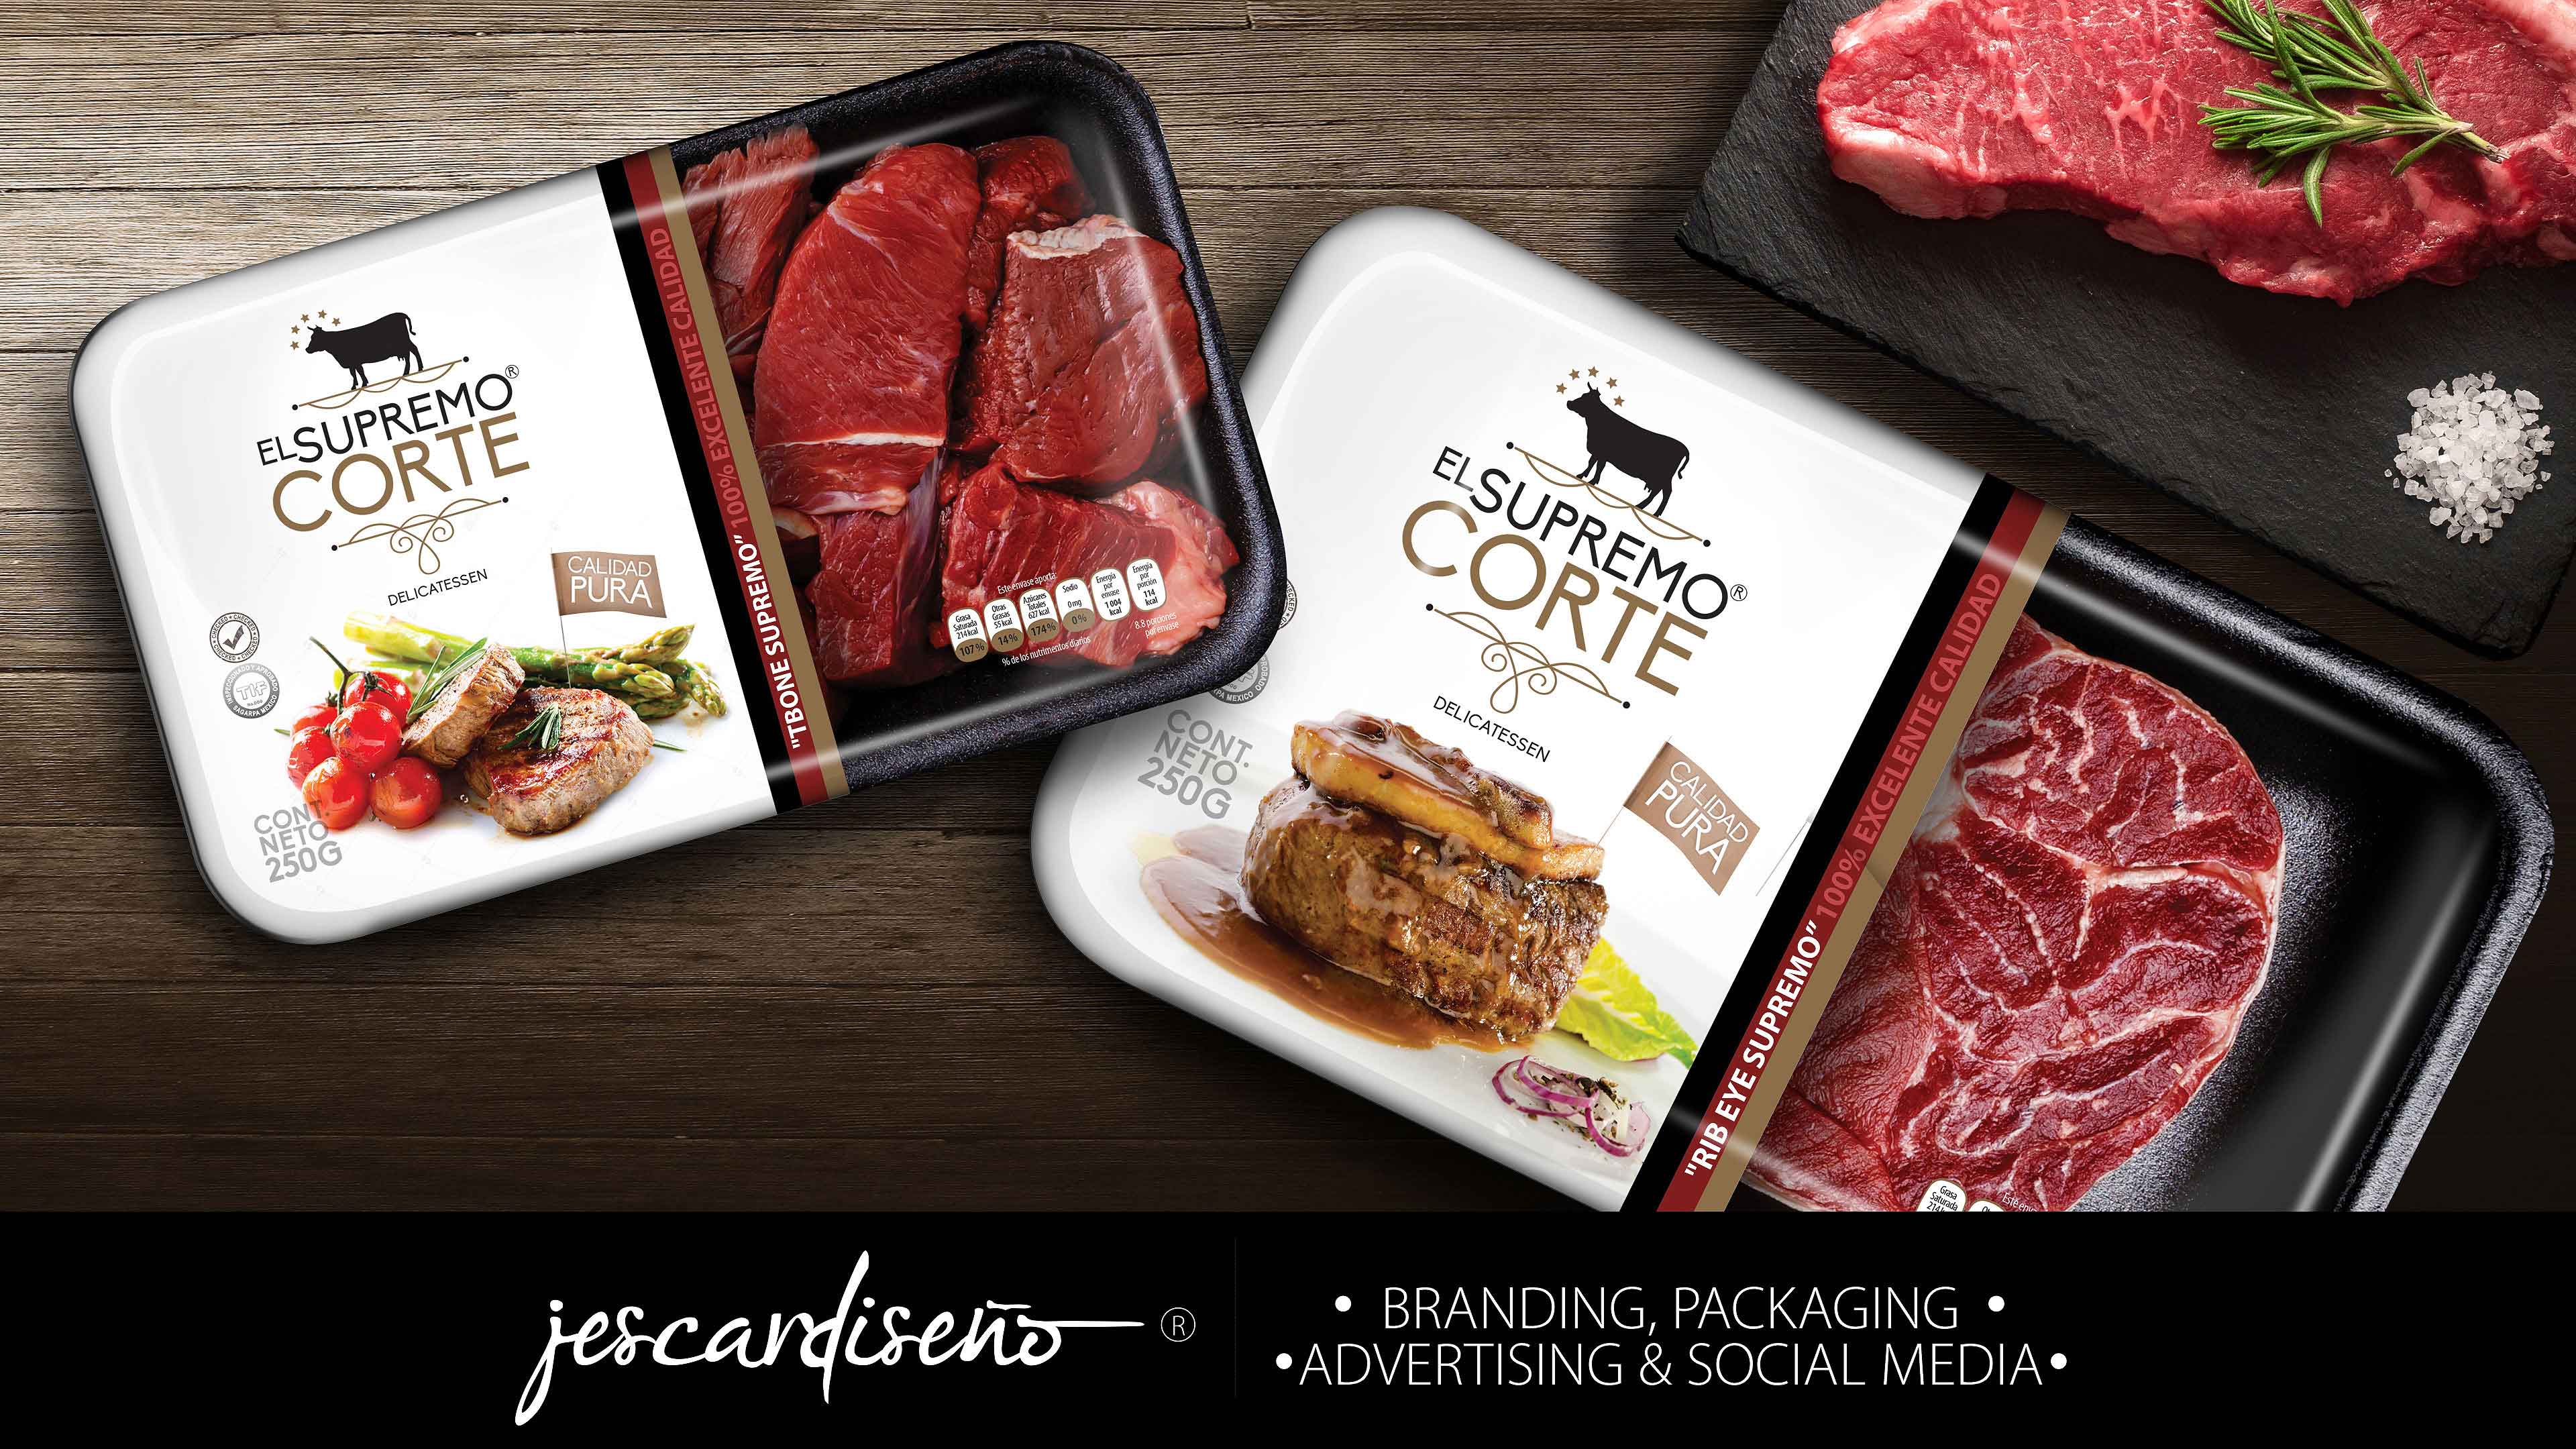 elcortesupremo carnes packaging branding jescardiseno v4